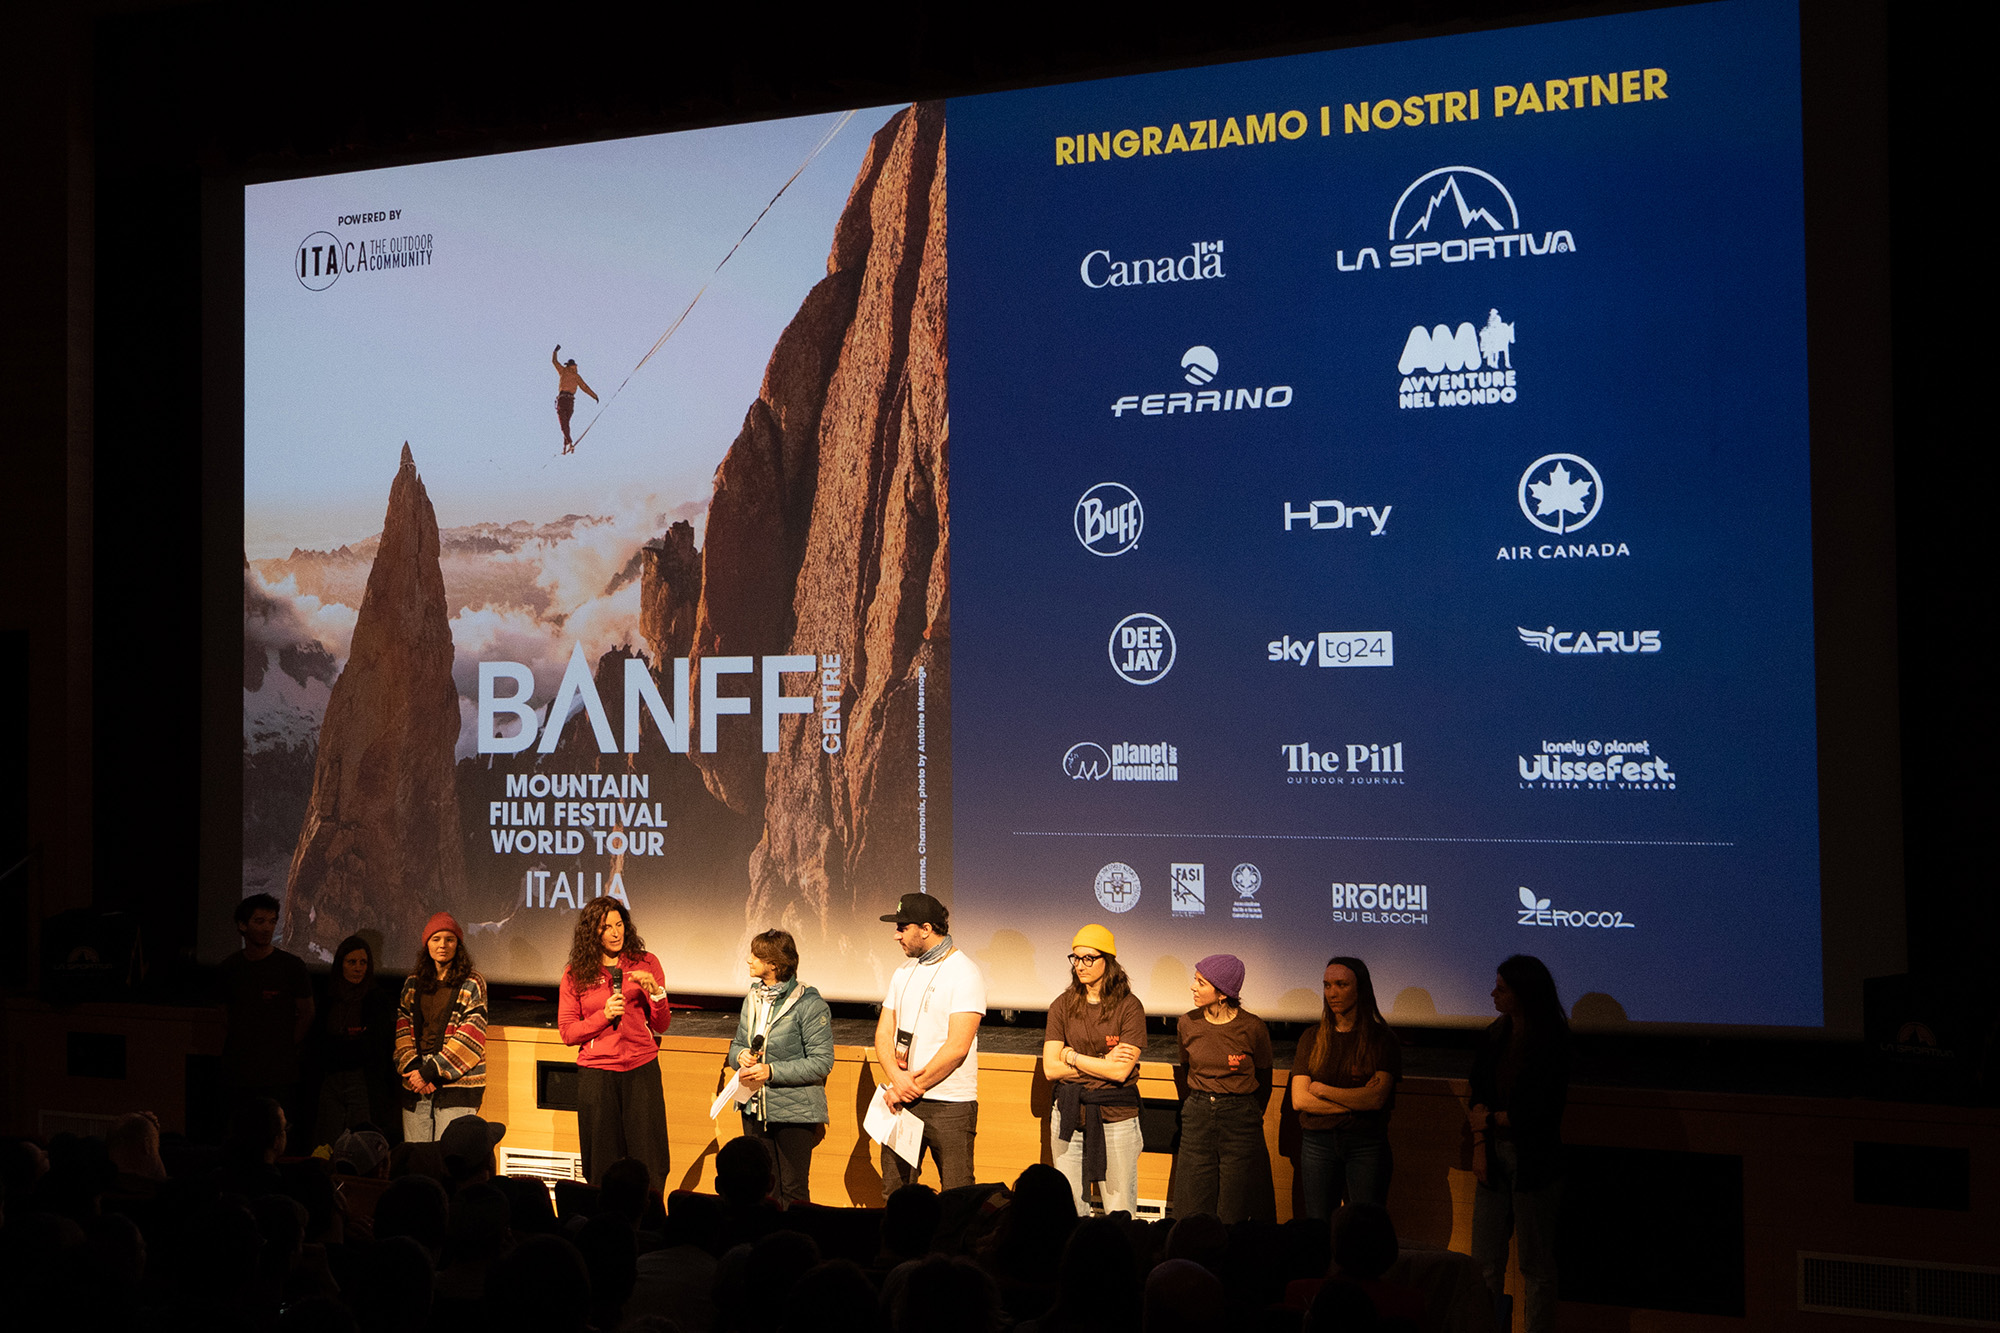 Abbiamo intervistato Alessandra Raggio, curatrice, organizzatrice e promotrice di Banff Centre Mountain Film Festival World Tour in Italia.